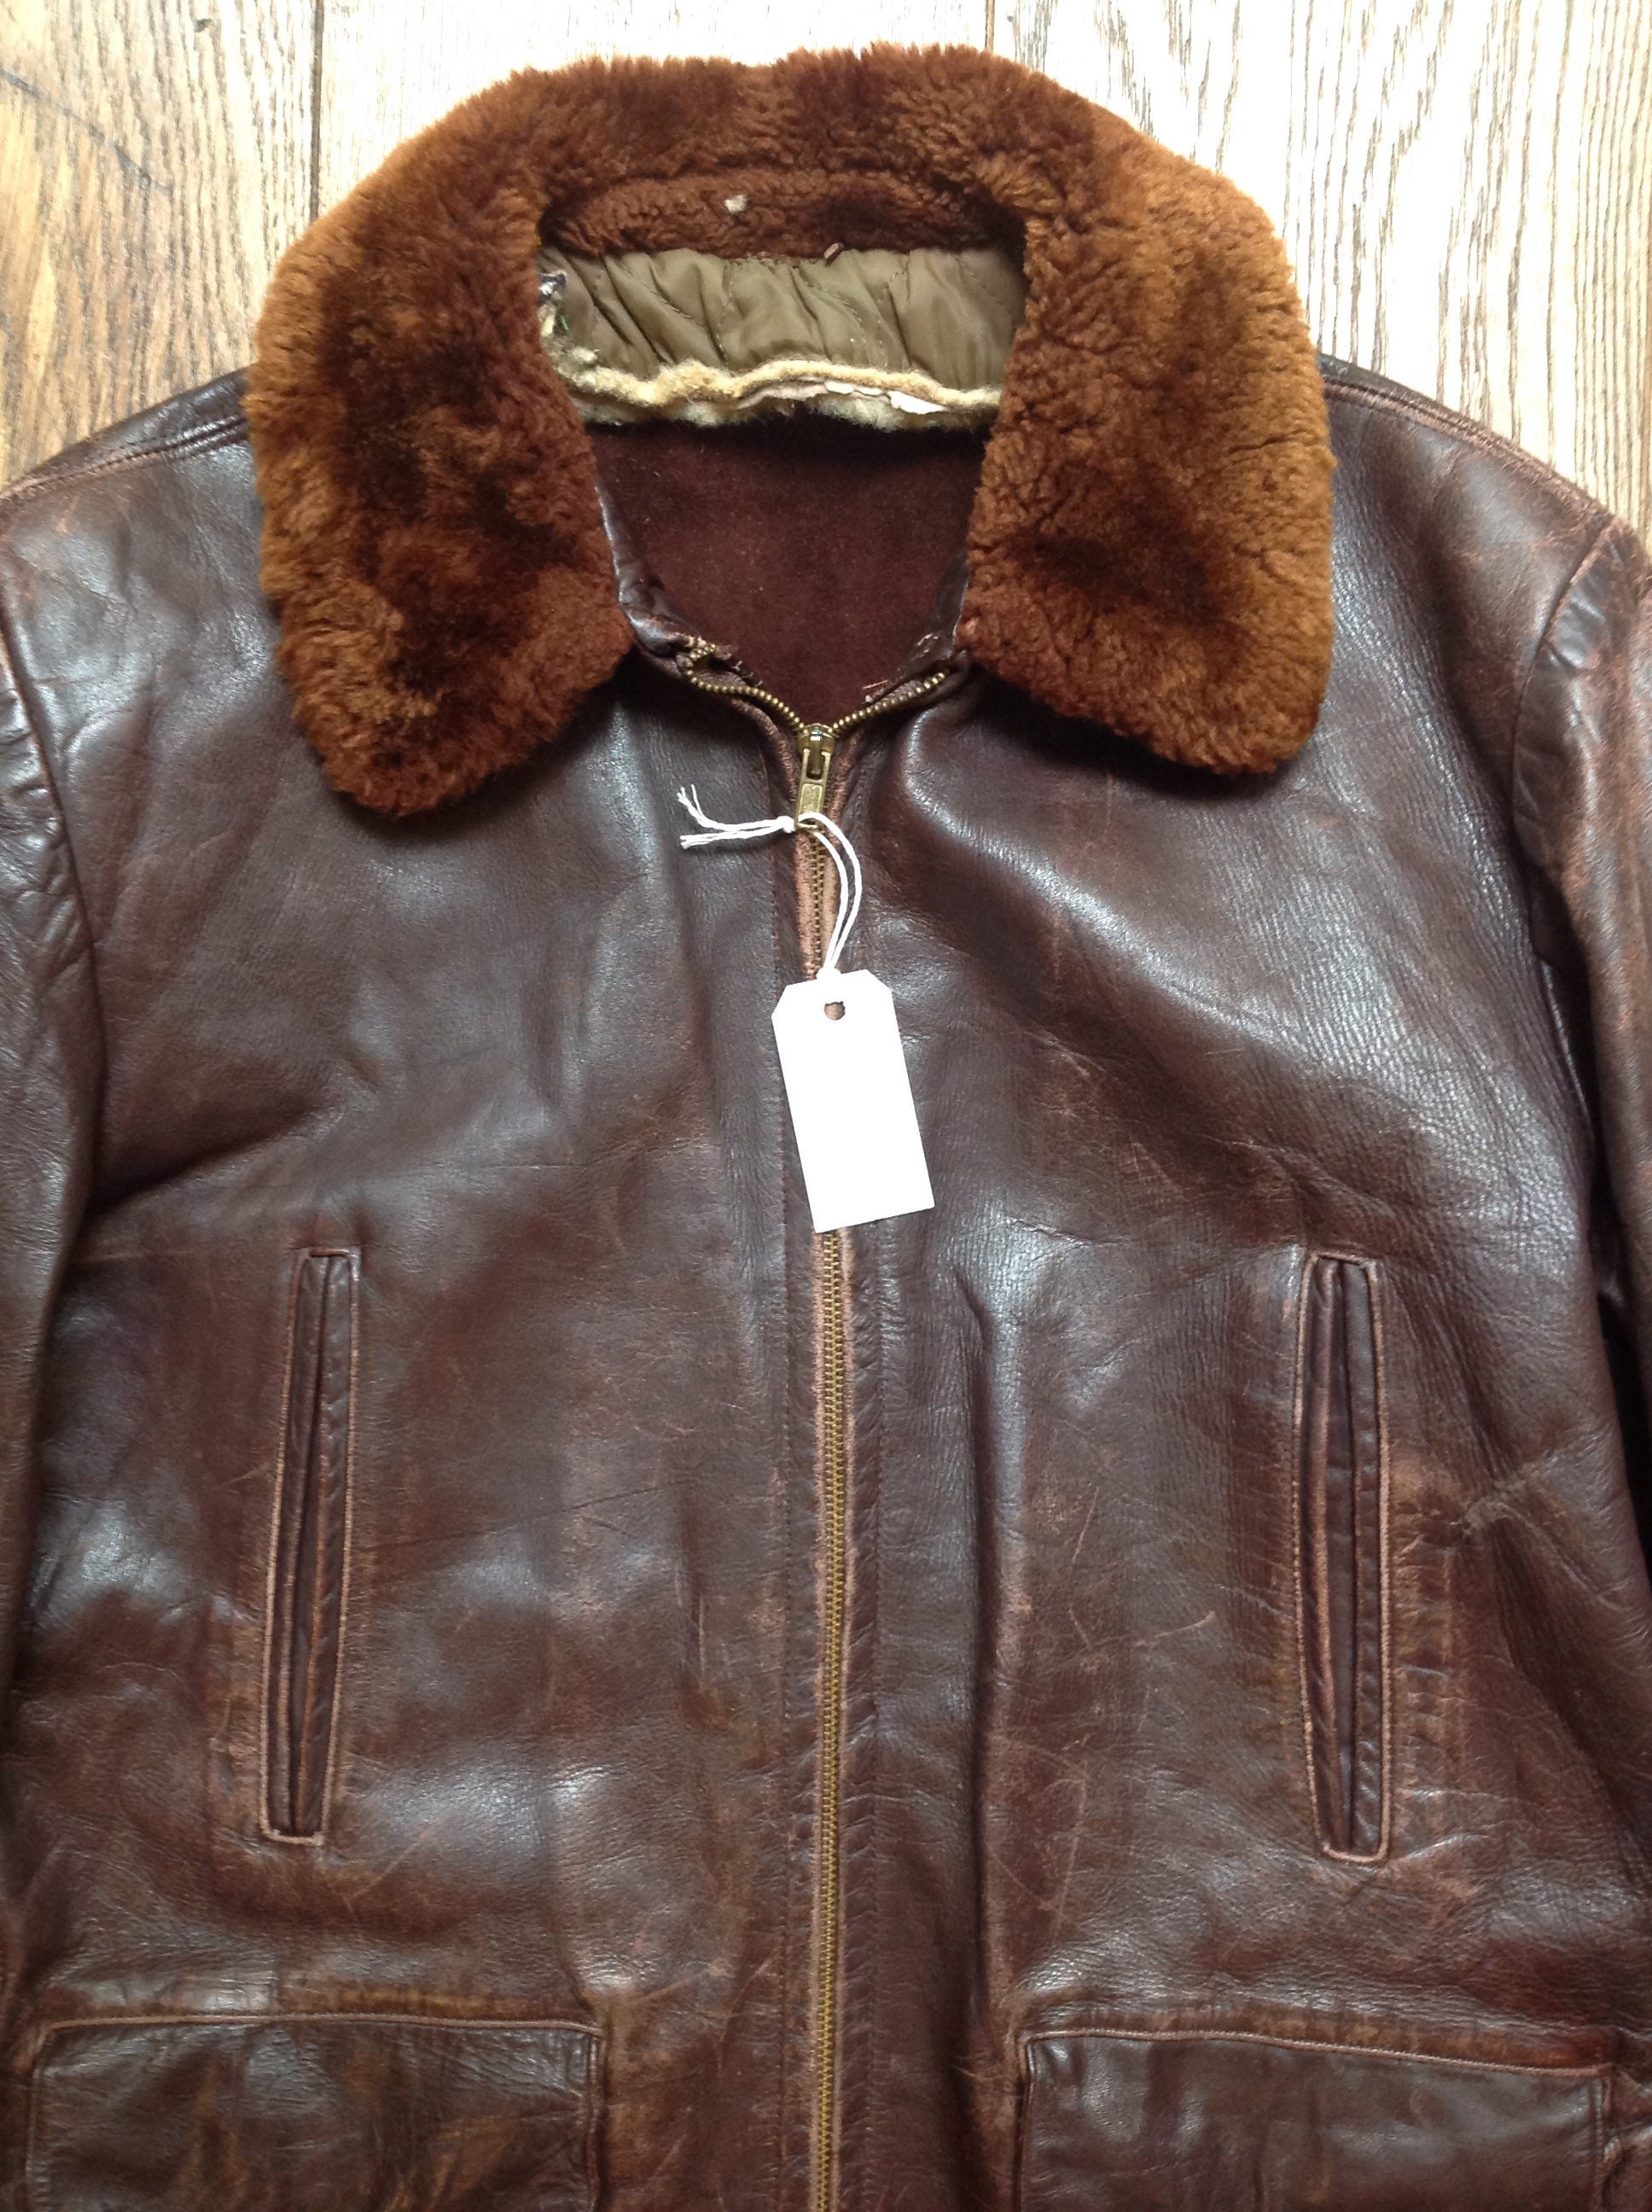 Vintage 1950s 50s brown leather car coat jacket mouton collar half belt ...